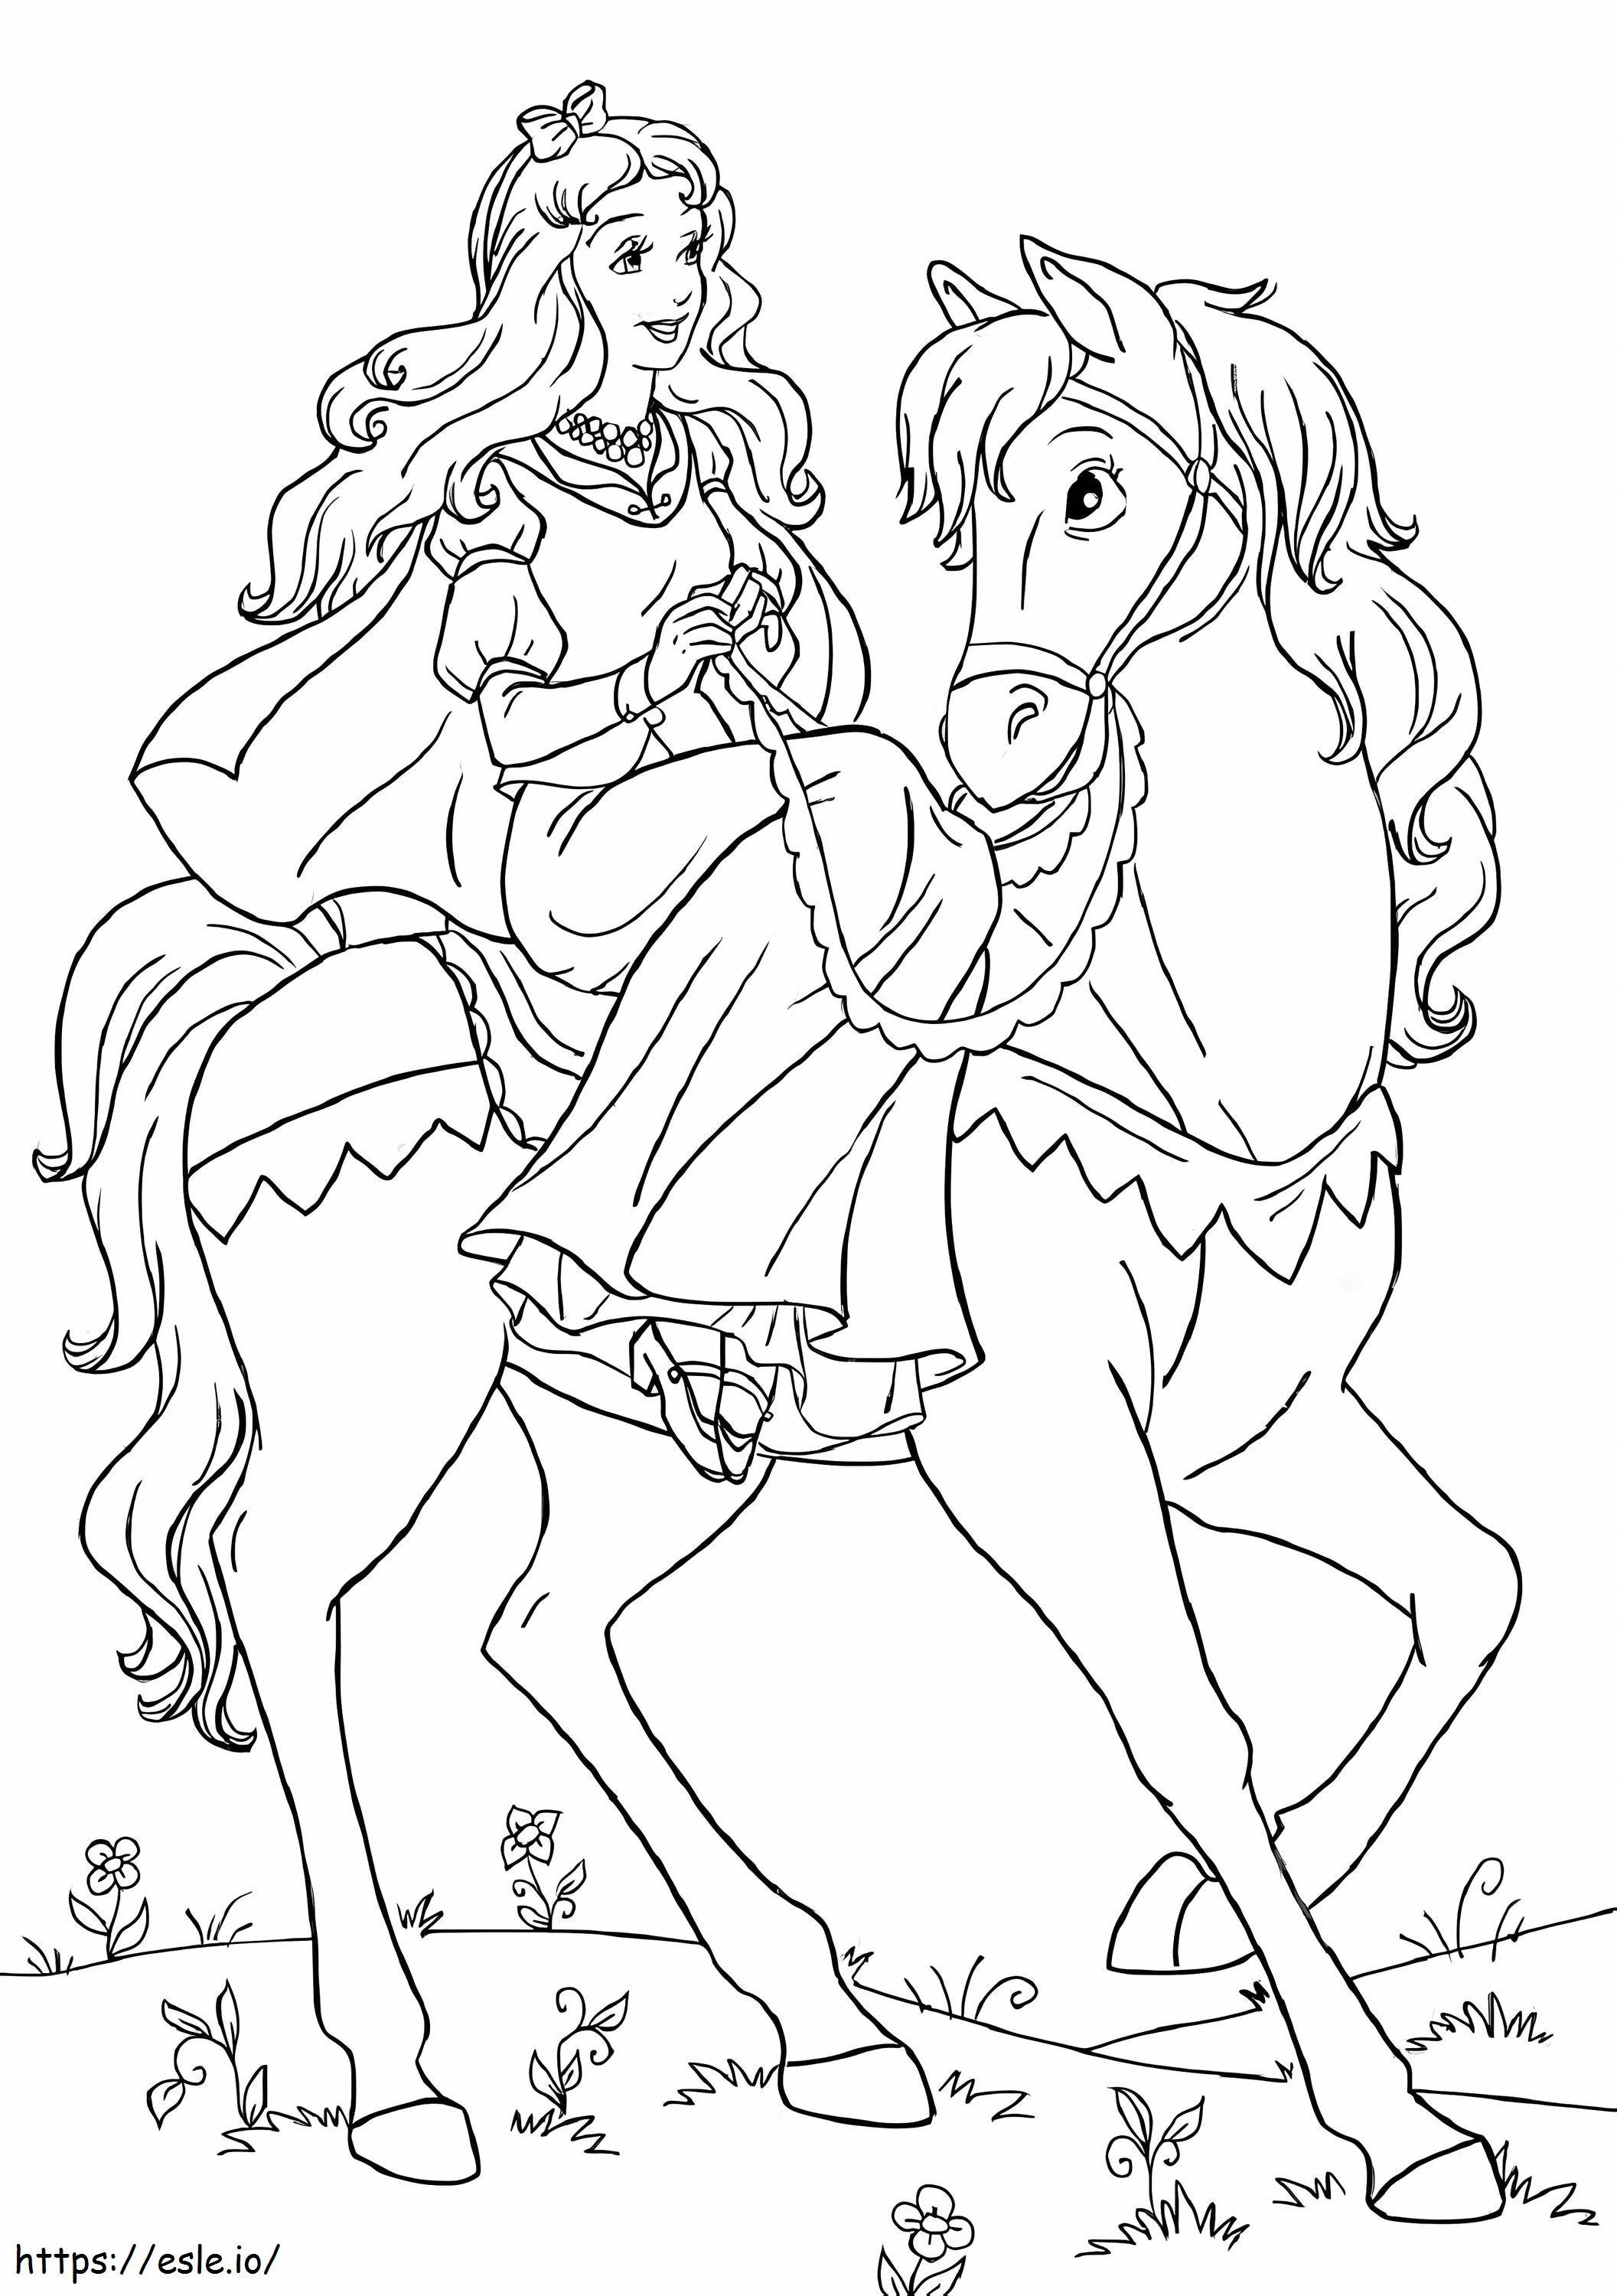 Prinzessin auf Pferd ausmalbilder